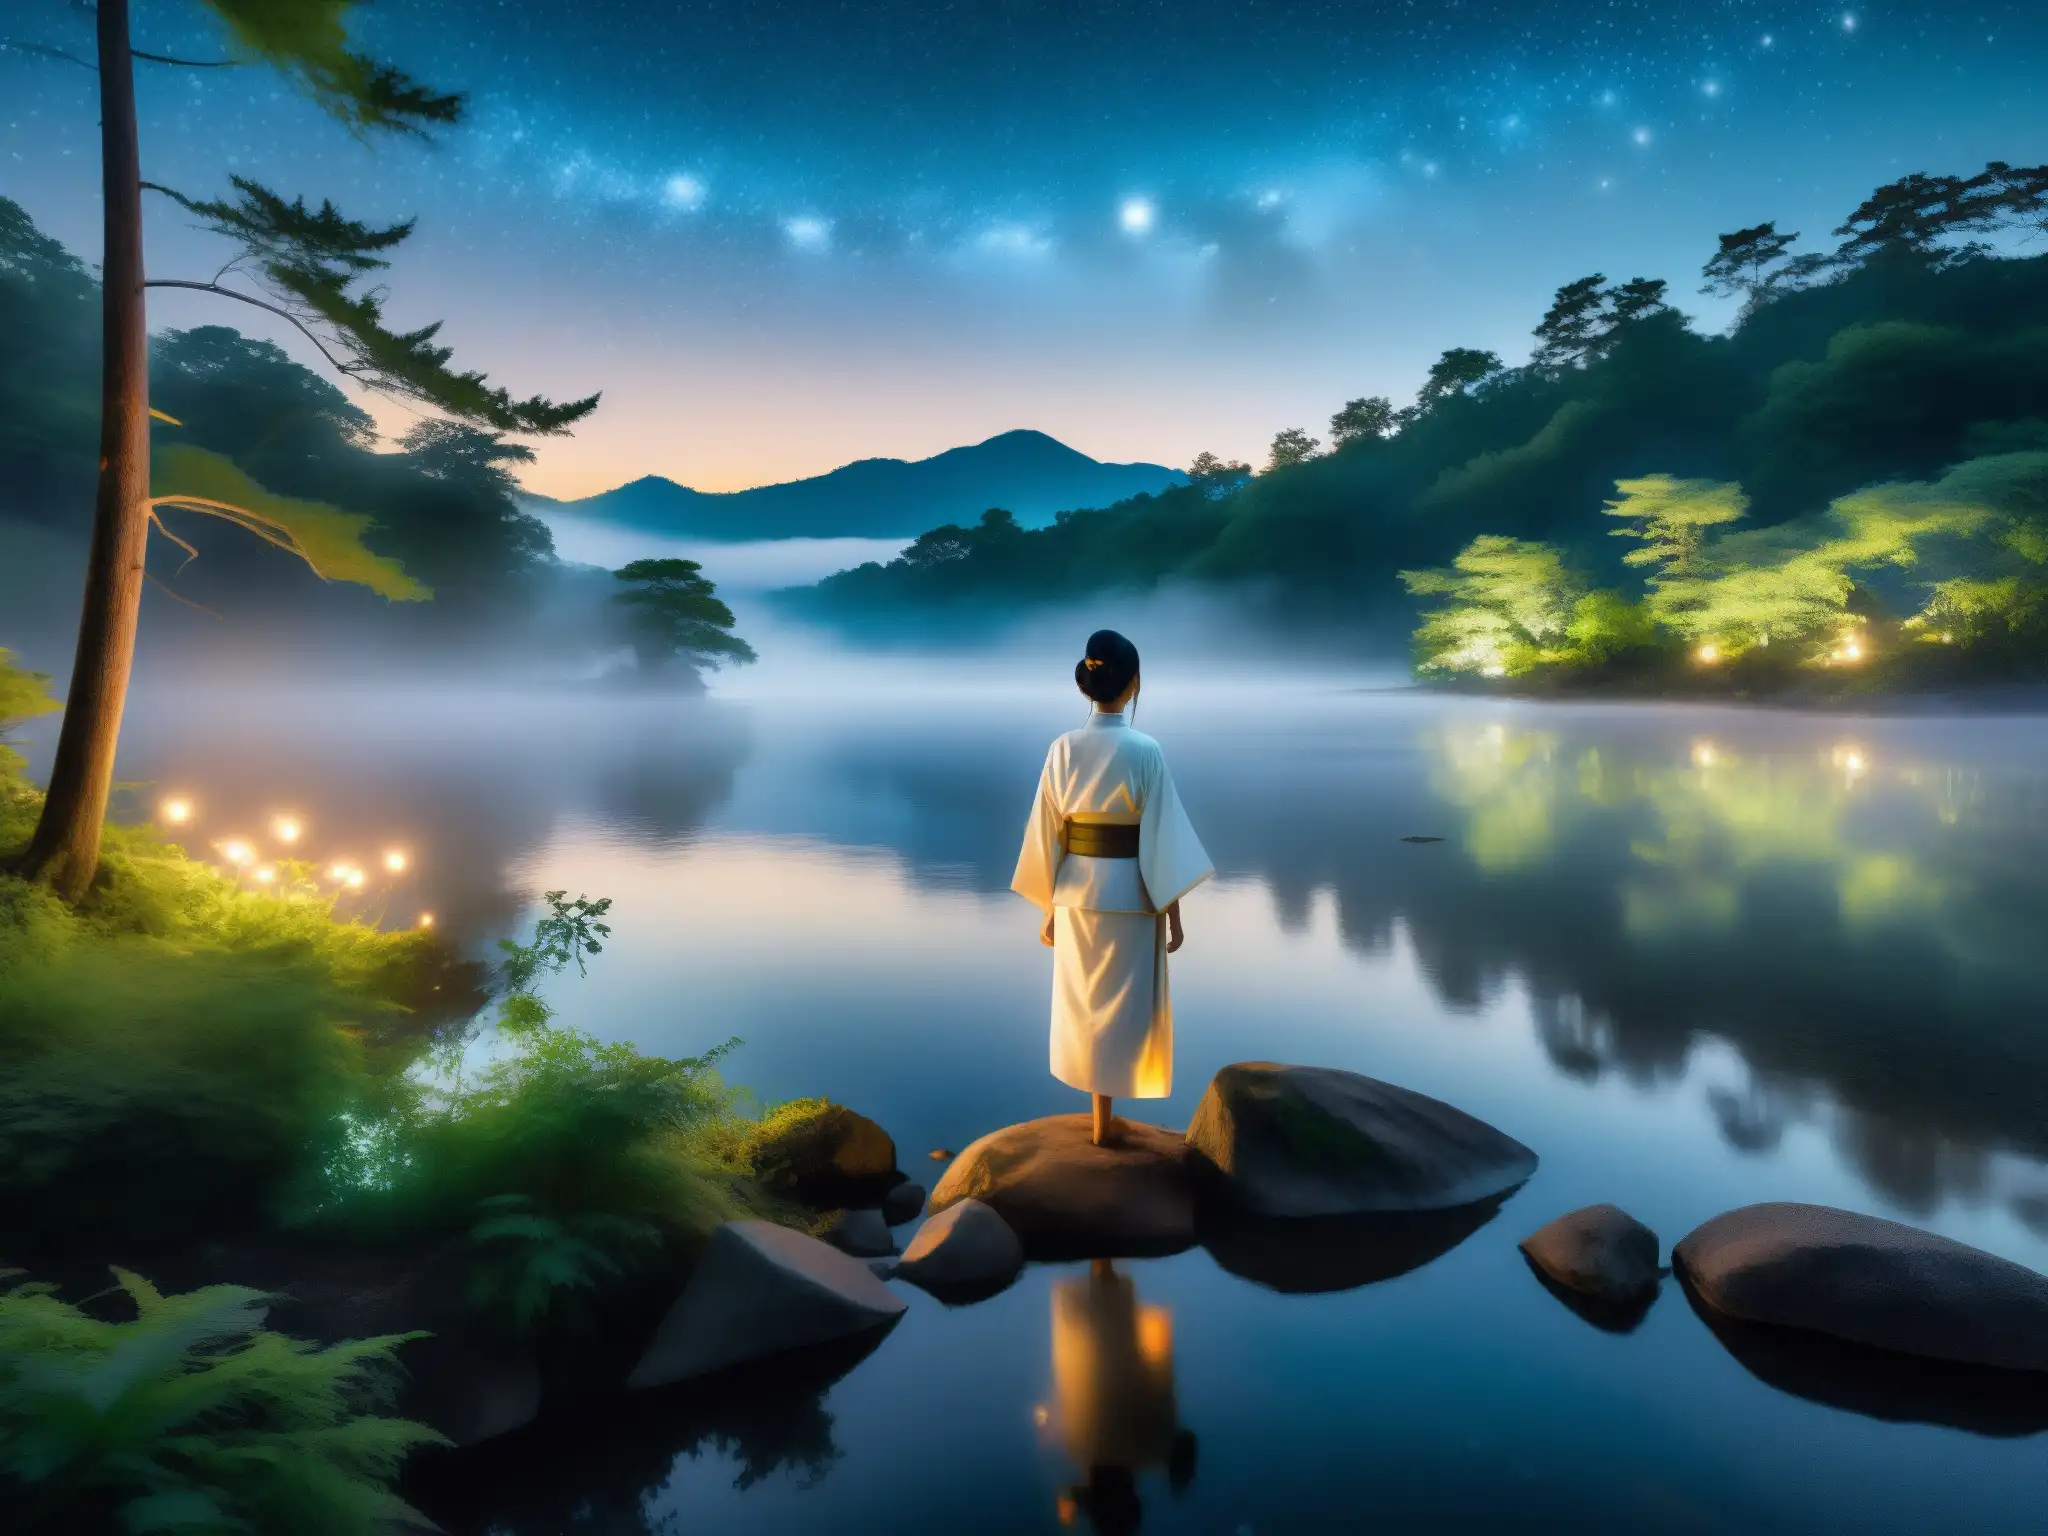 Imagen de un bosque envuelto en niebla con un río sereno y una figura en kimono blanco, evocando una leyenda japonesa de lamento eterno